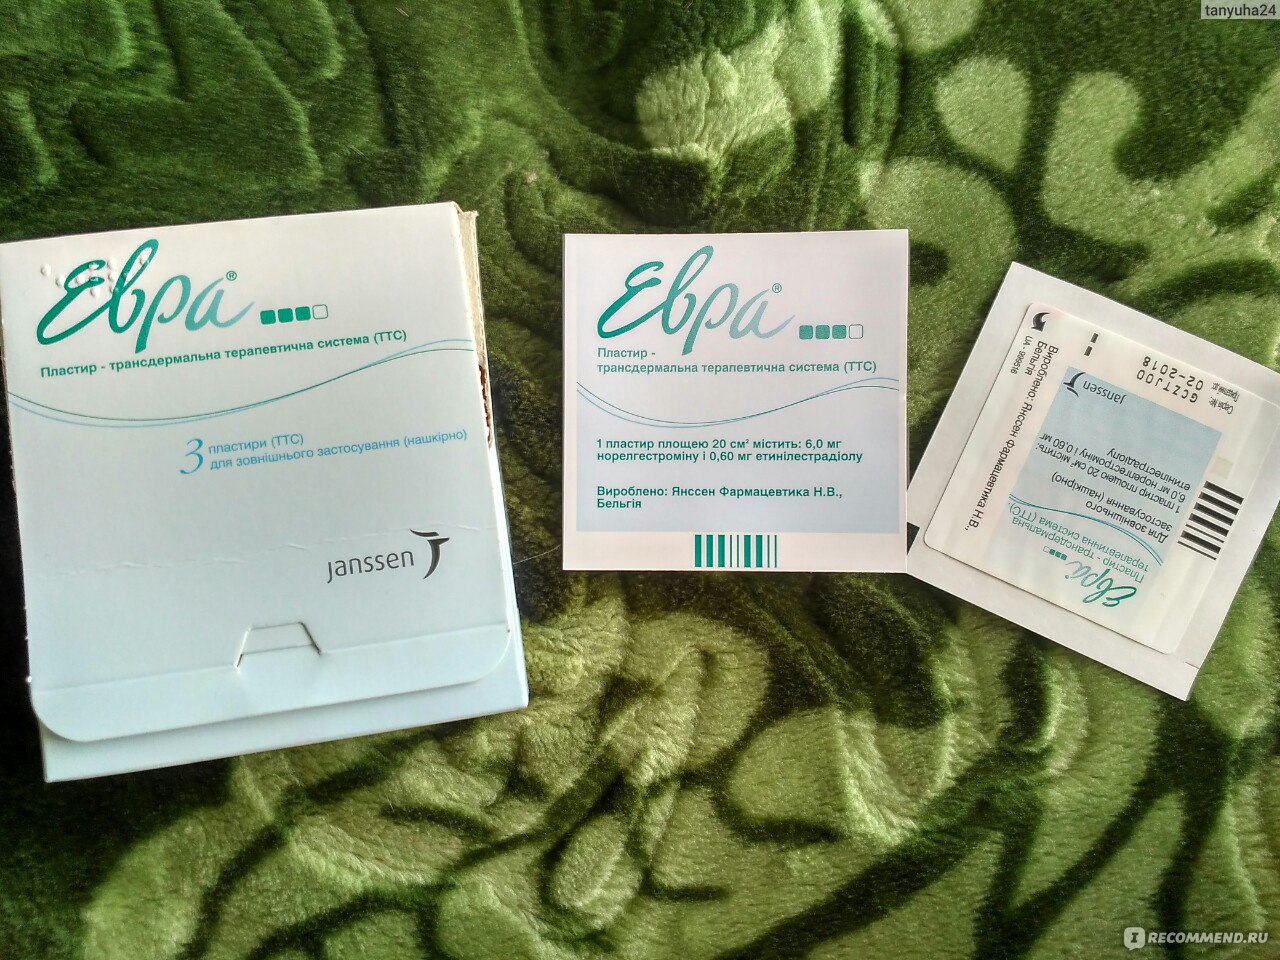 Контрацептивный гормональный пластырь Евра (Evra) - «Гормональный .